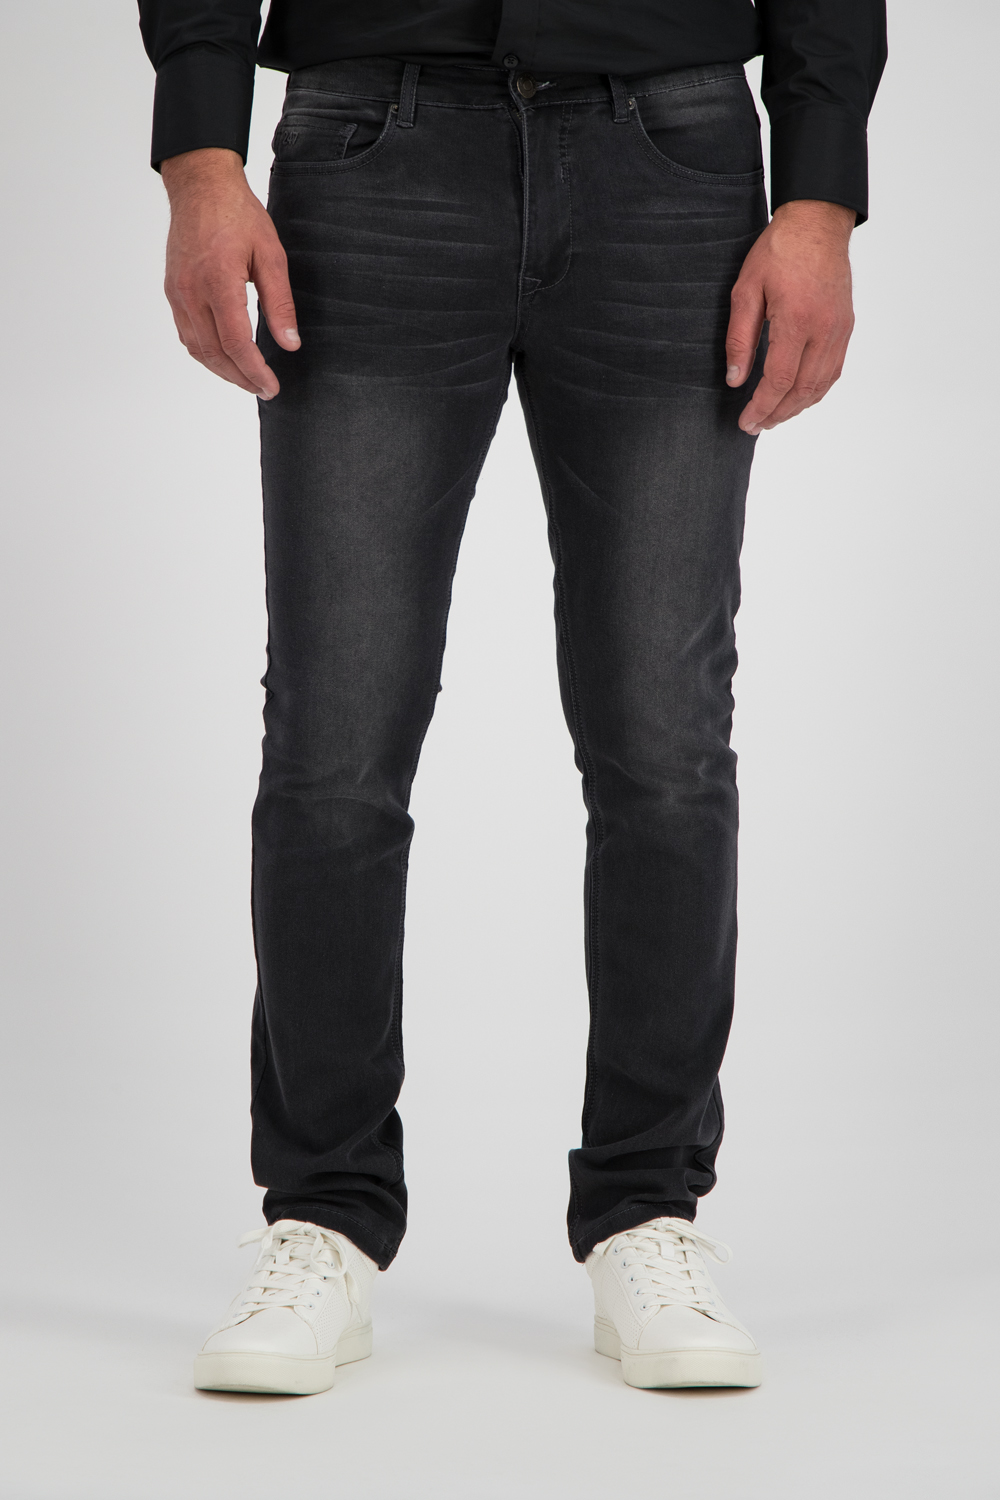 247 jeans Palm Slim J06 Jog Grey Denim